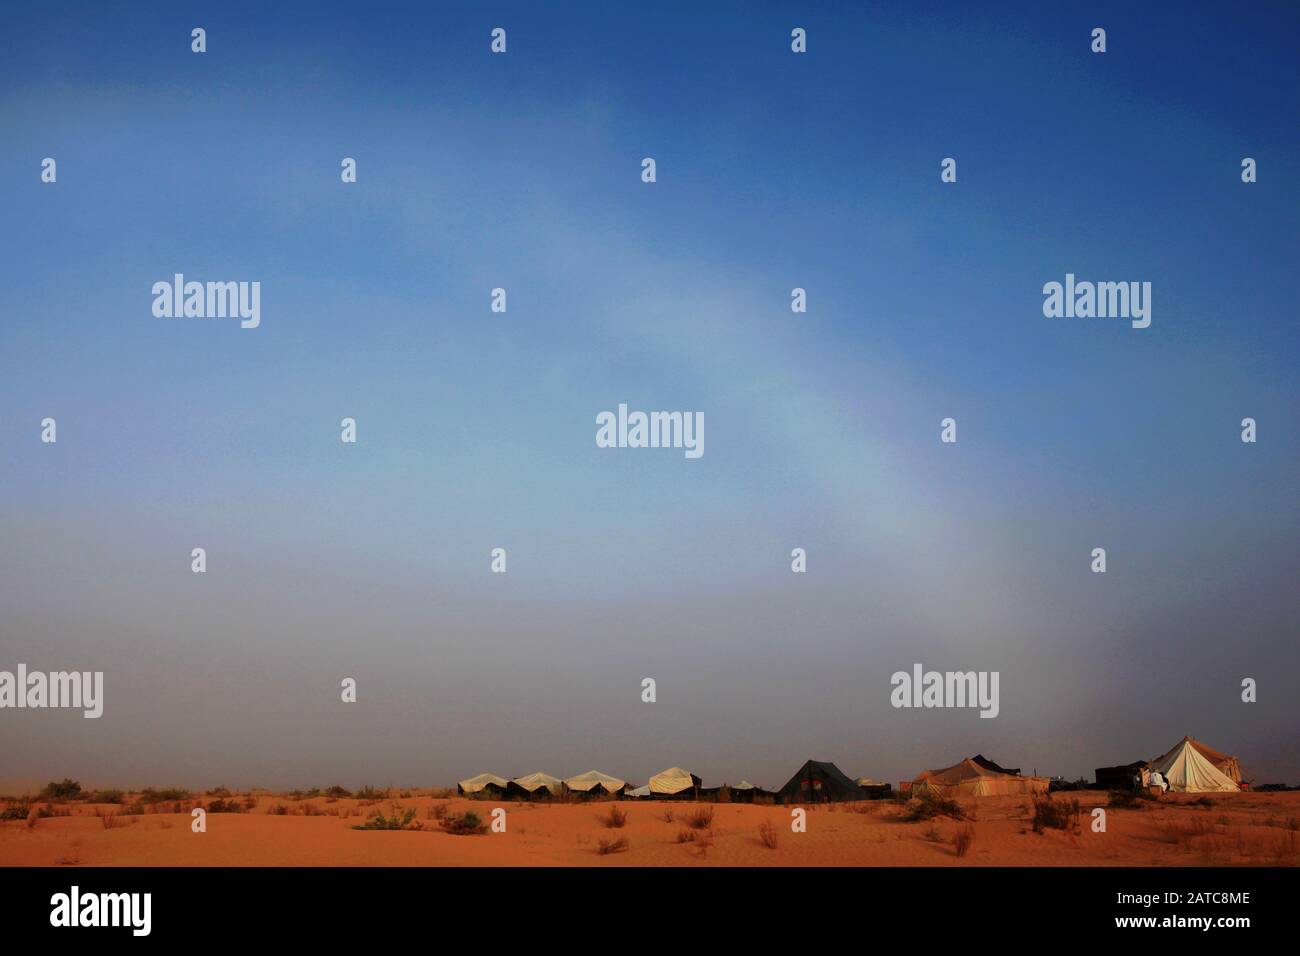 Le fogbow se courbe sur le ciel au-dessus du camp de tente et des dunes de sable au Sahara Banque D'Images